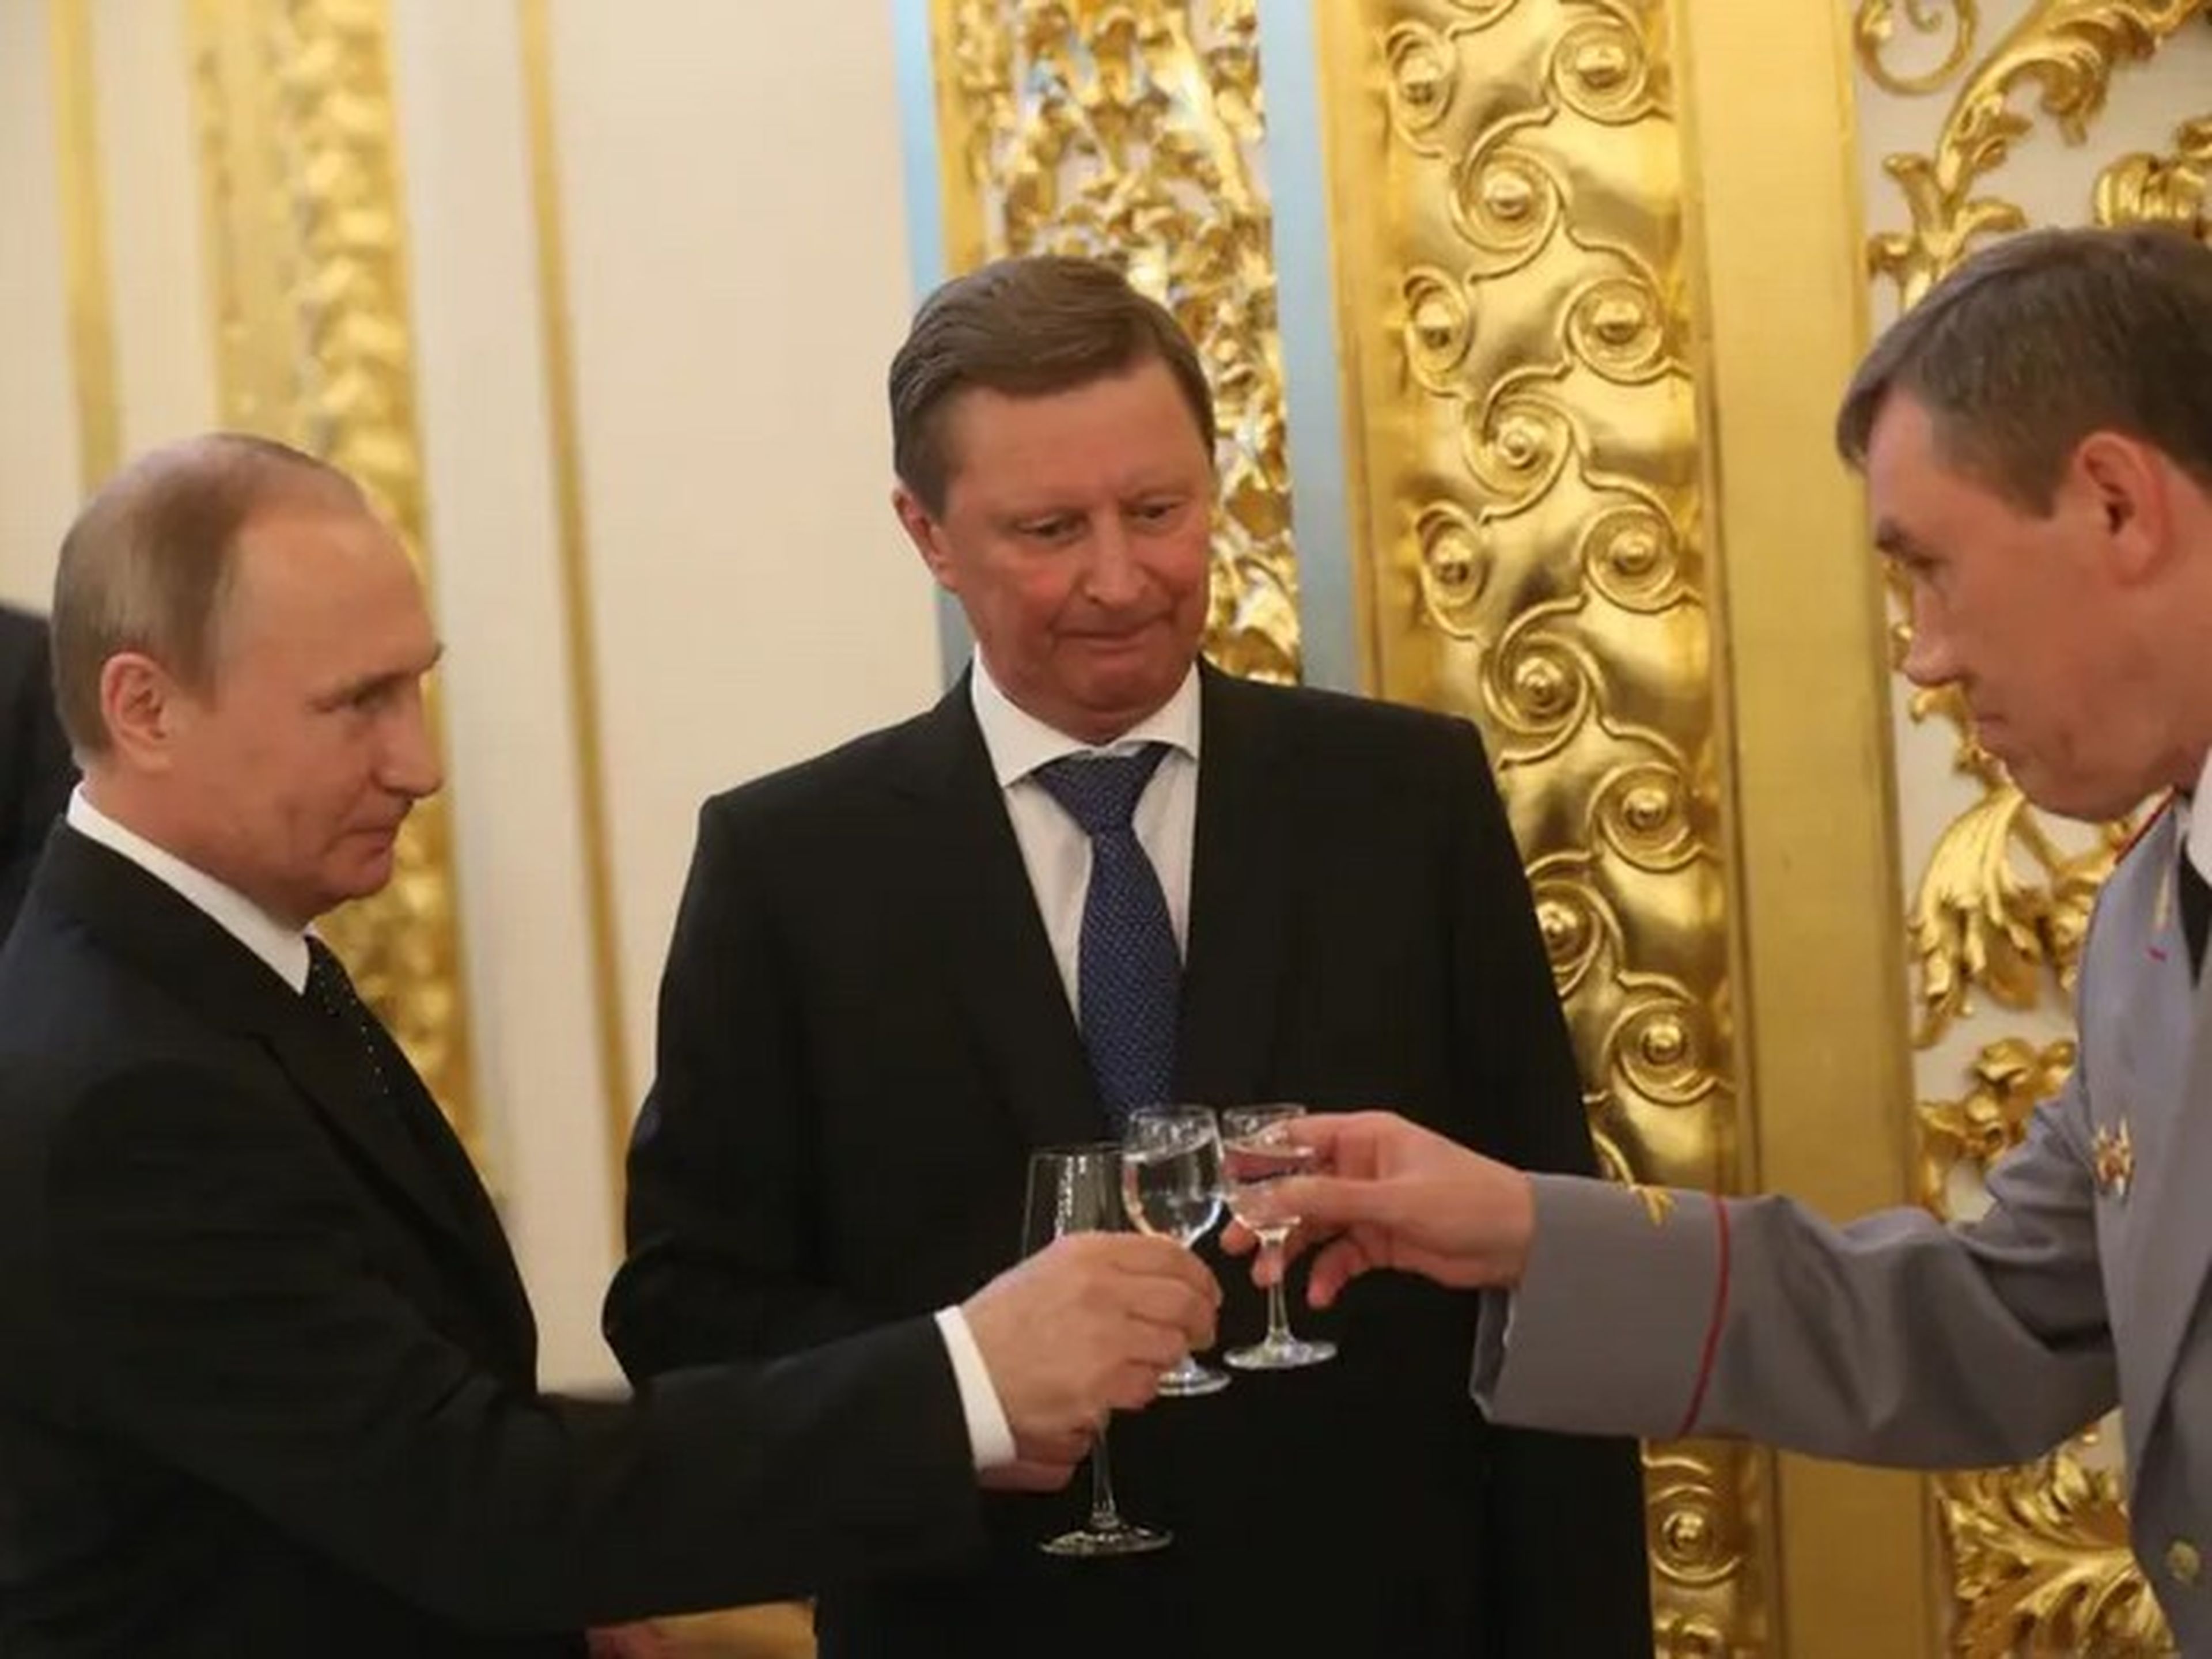 El presidente ruso, Vladimir Putin (izquierda), brinda con un vaso de vodka con el viceministro de Defensa, Valery Gerasimov (derecha), y el jefe de gabinete del presidente, Sergei Ivanov (centro).